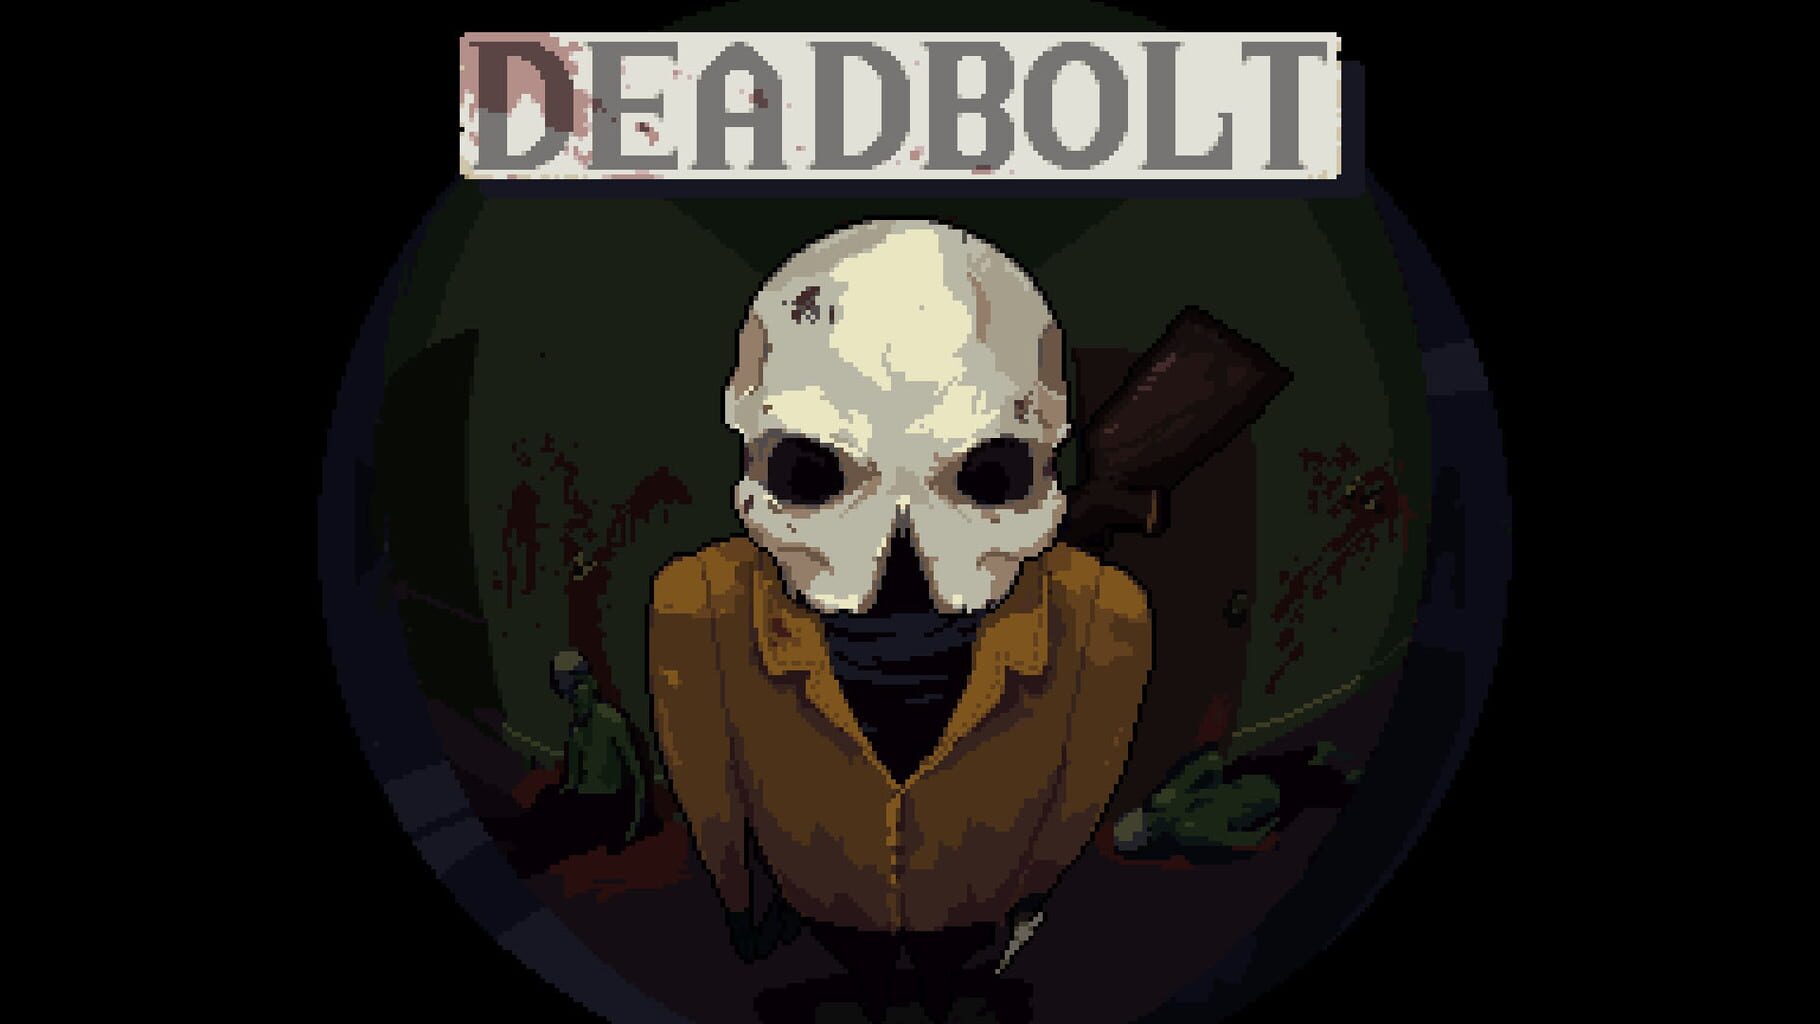 Deadbolt artwork